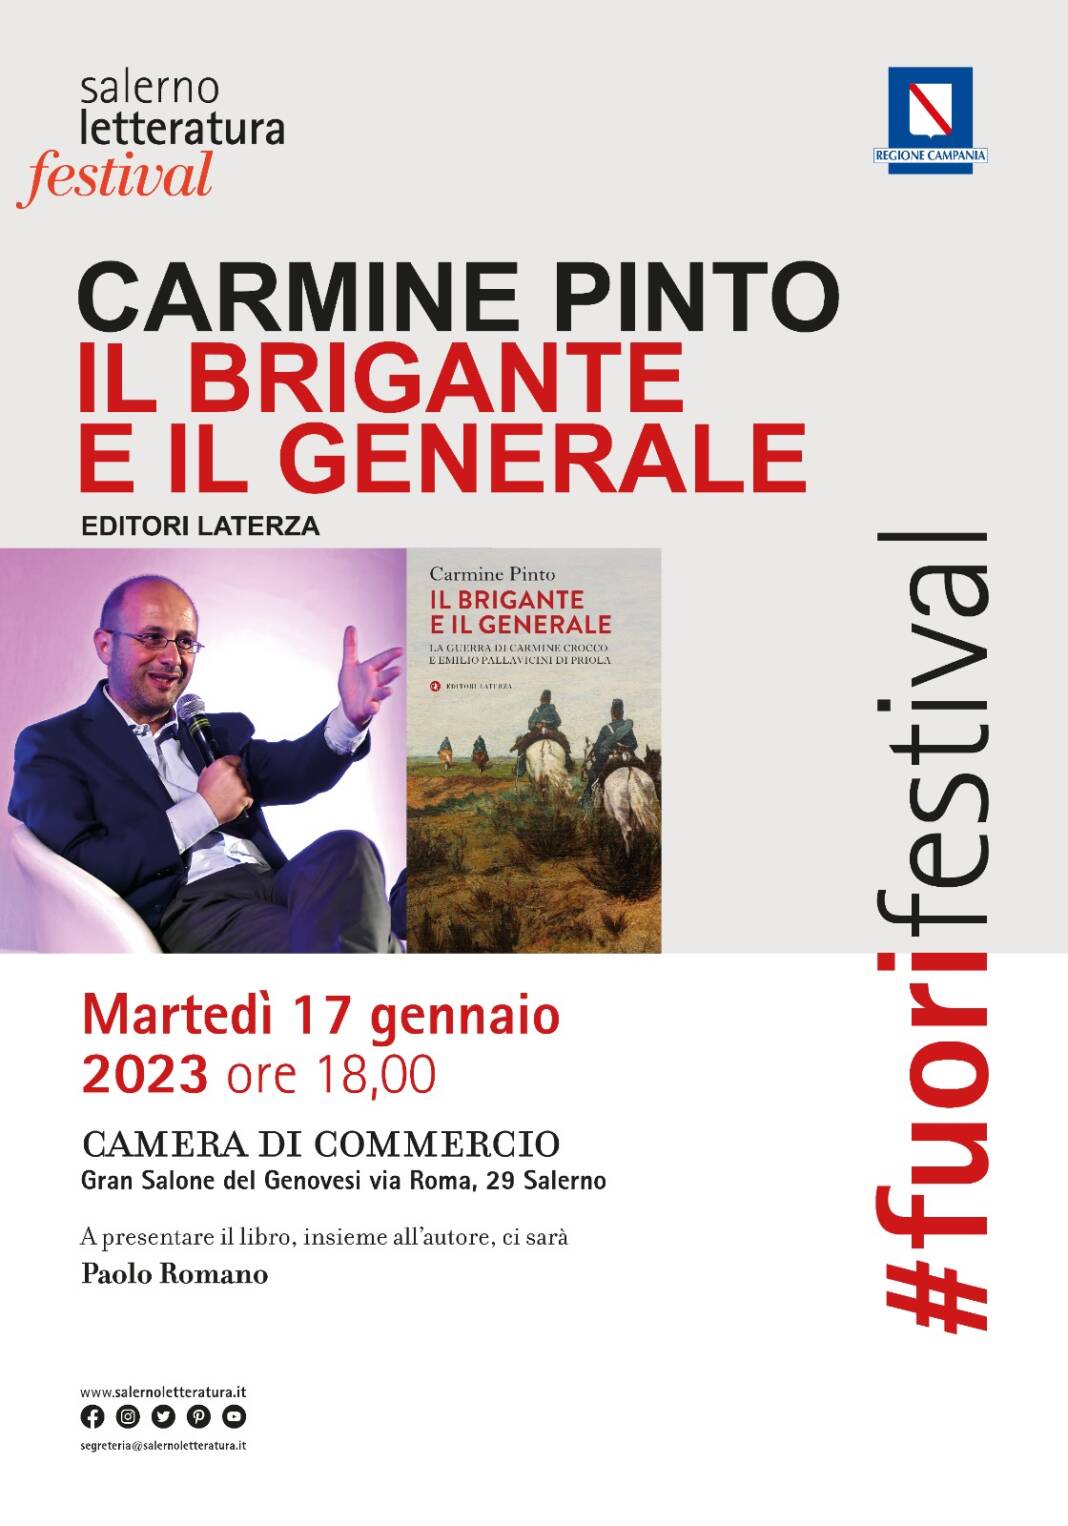 Salerno Letteratura con Carmine Pinto